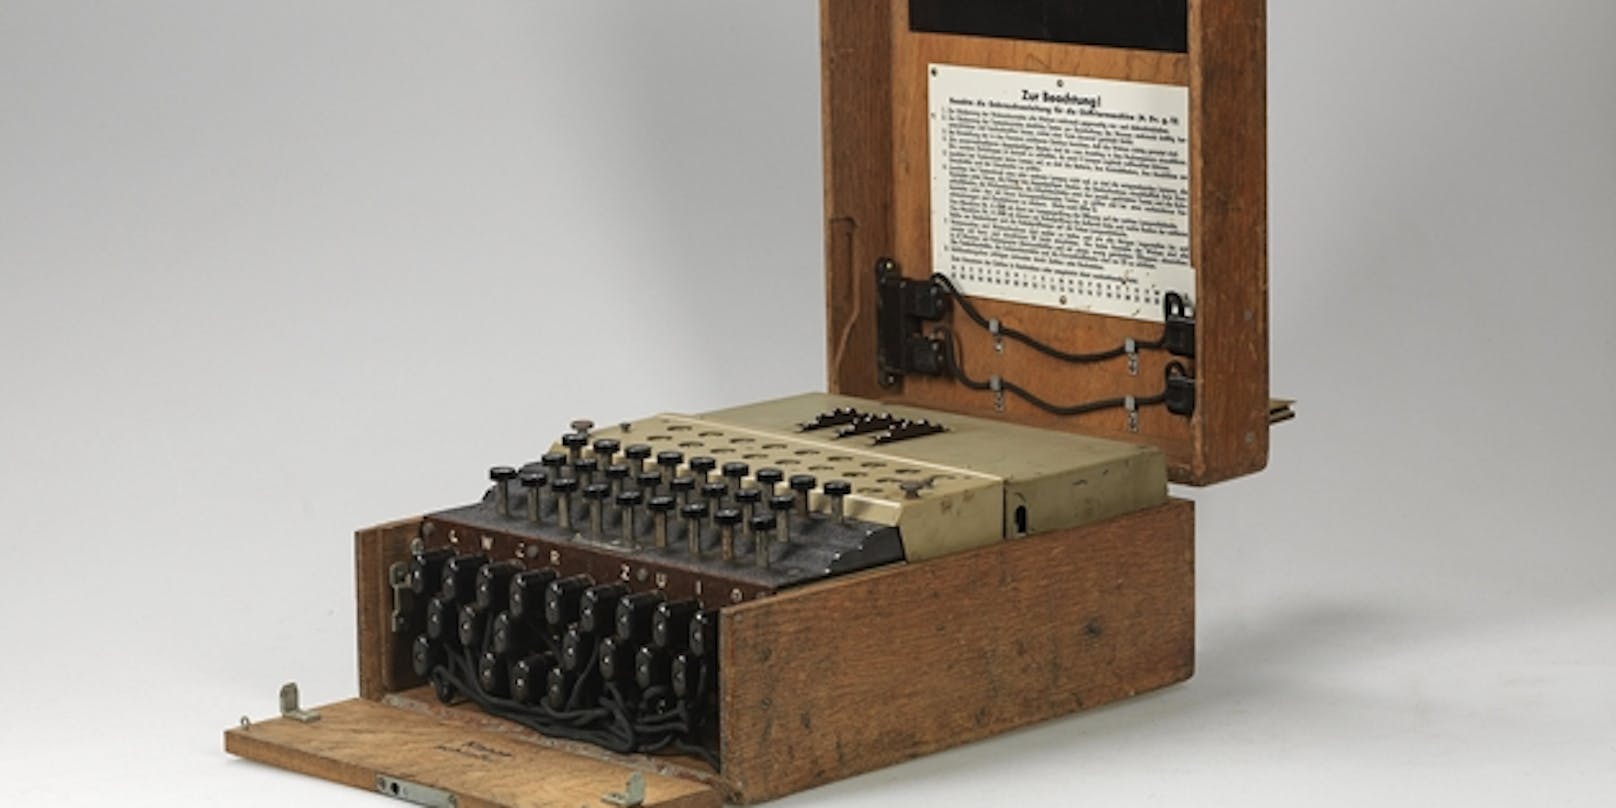 Enigma-Chiffriermaschine um 117.800 Euro versteigert